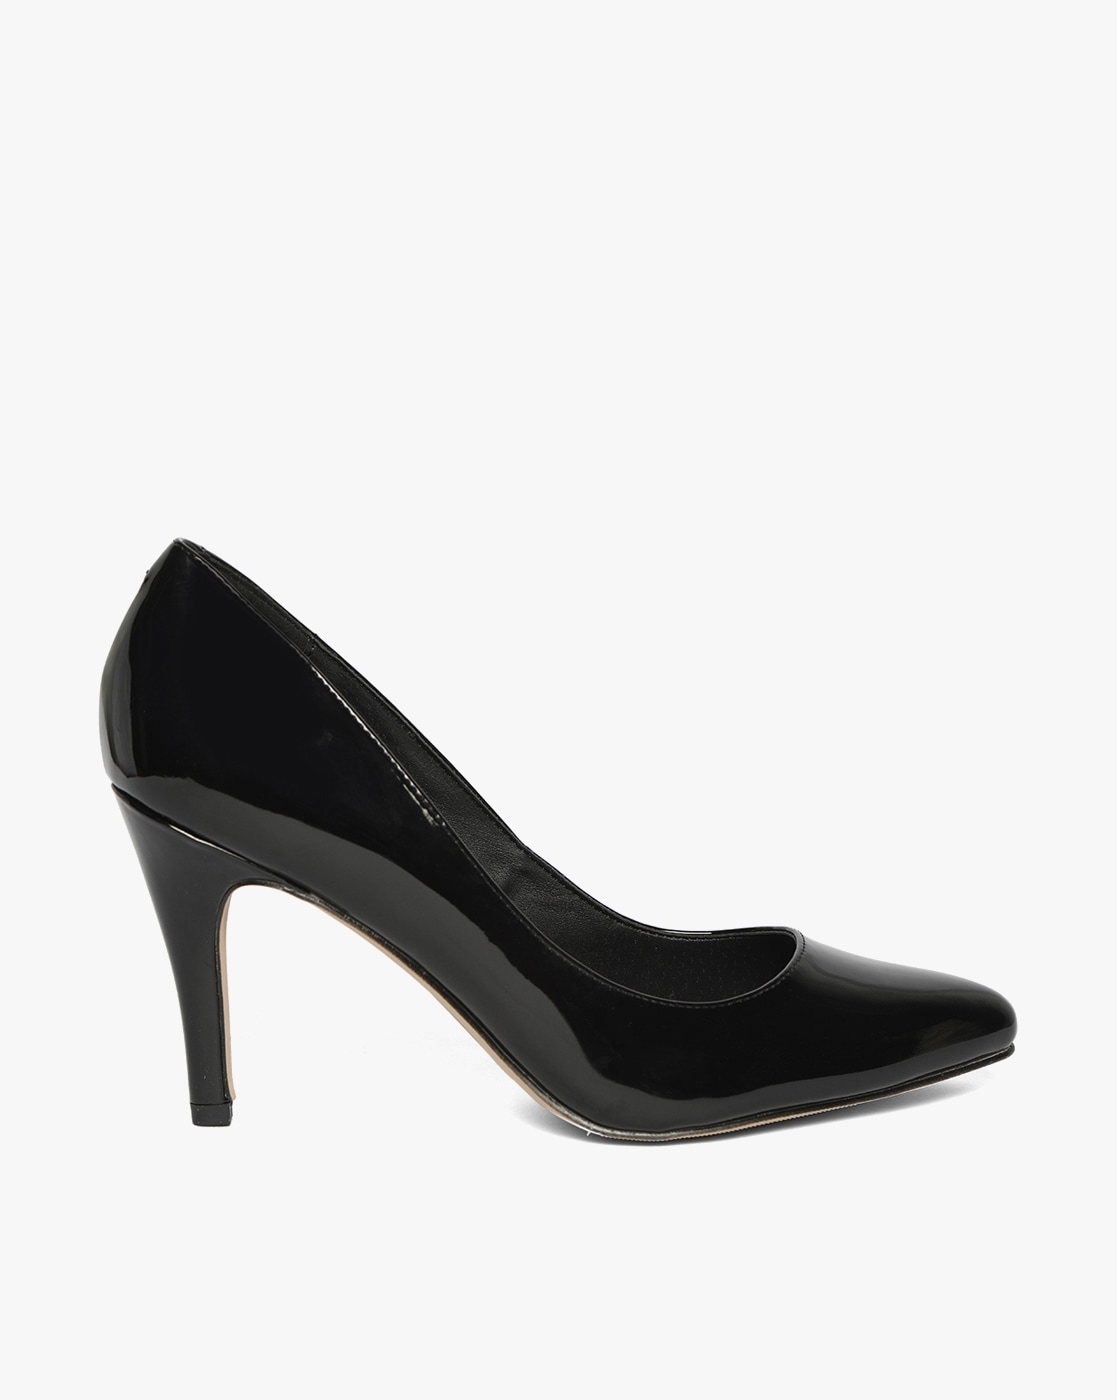 black heels for girl